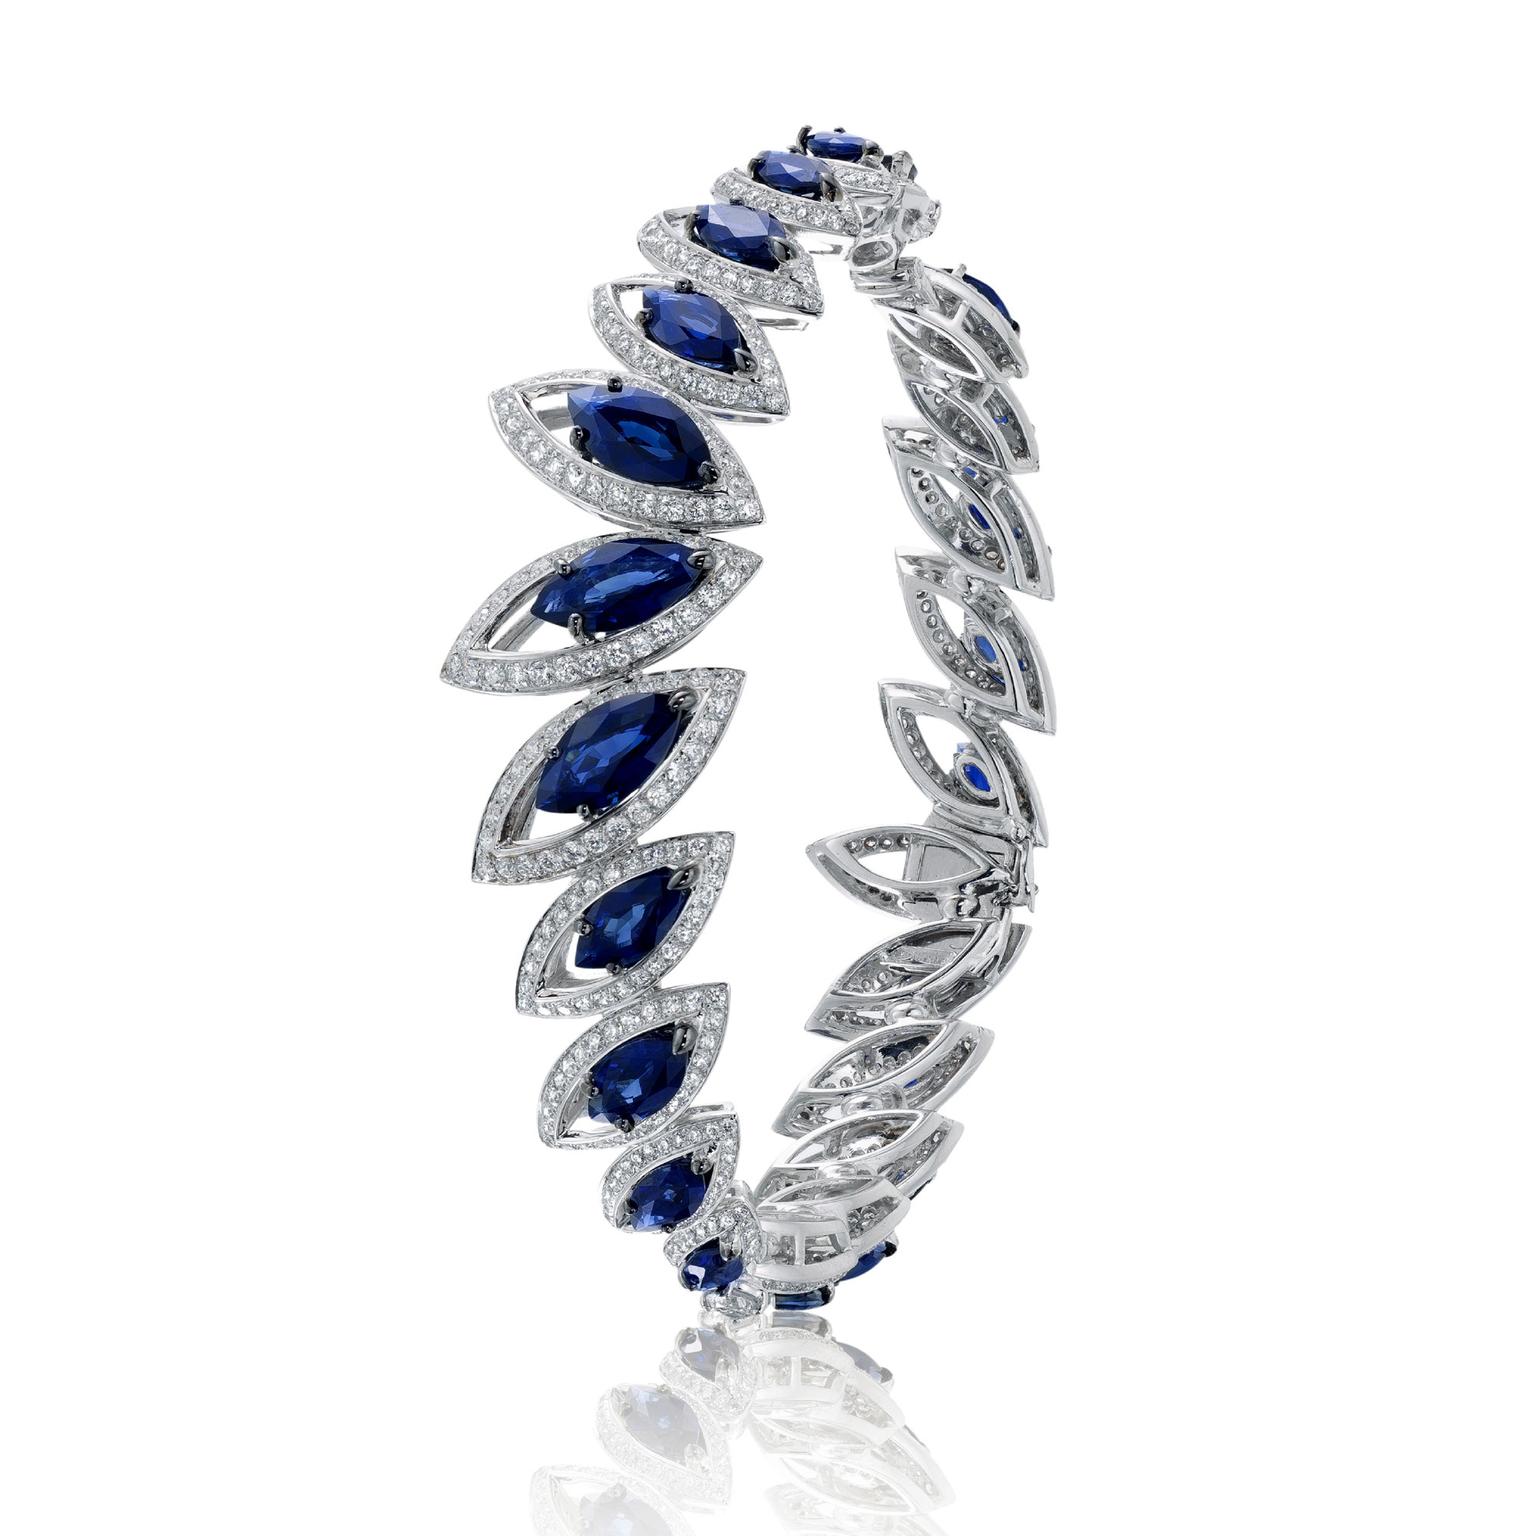 Niquesa marquise-cut blue sapphire bracelet